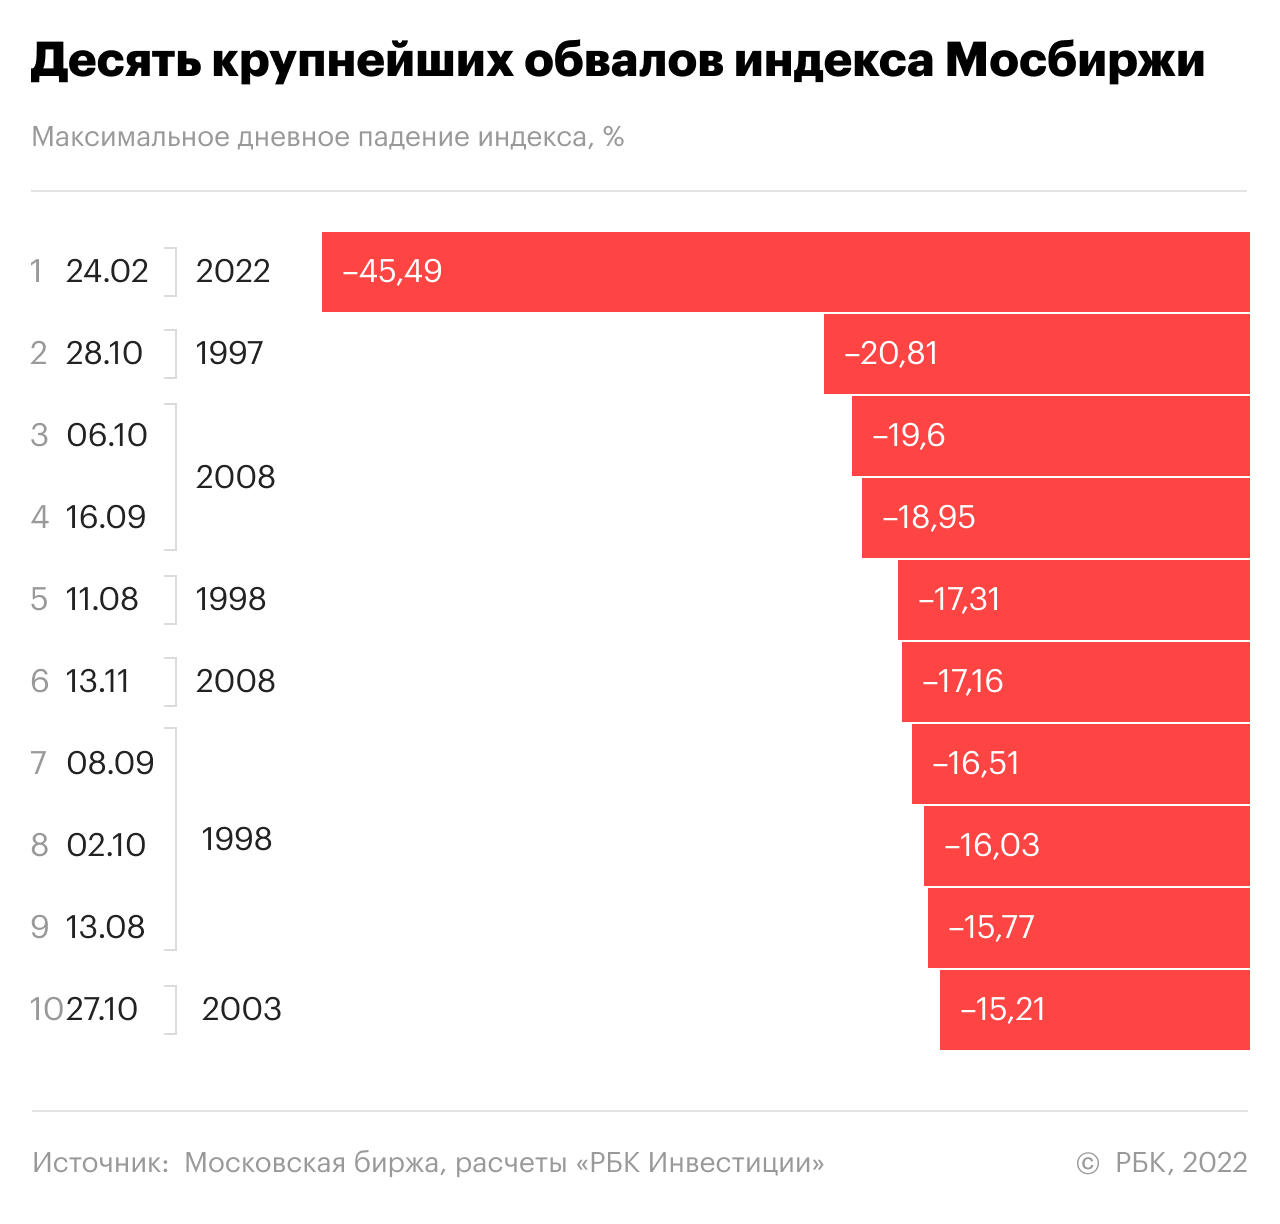 Десять крупнейших обвалов индекса Мосбиржи за историю